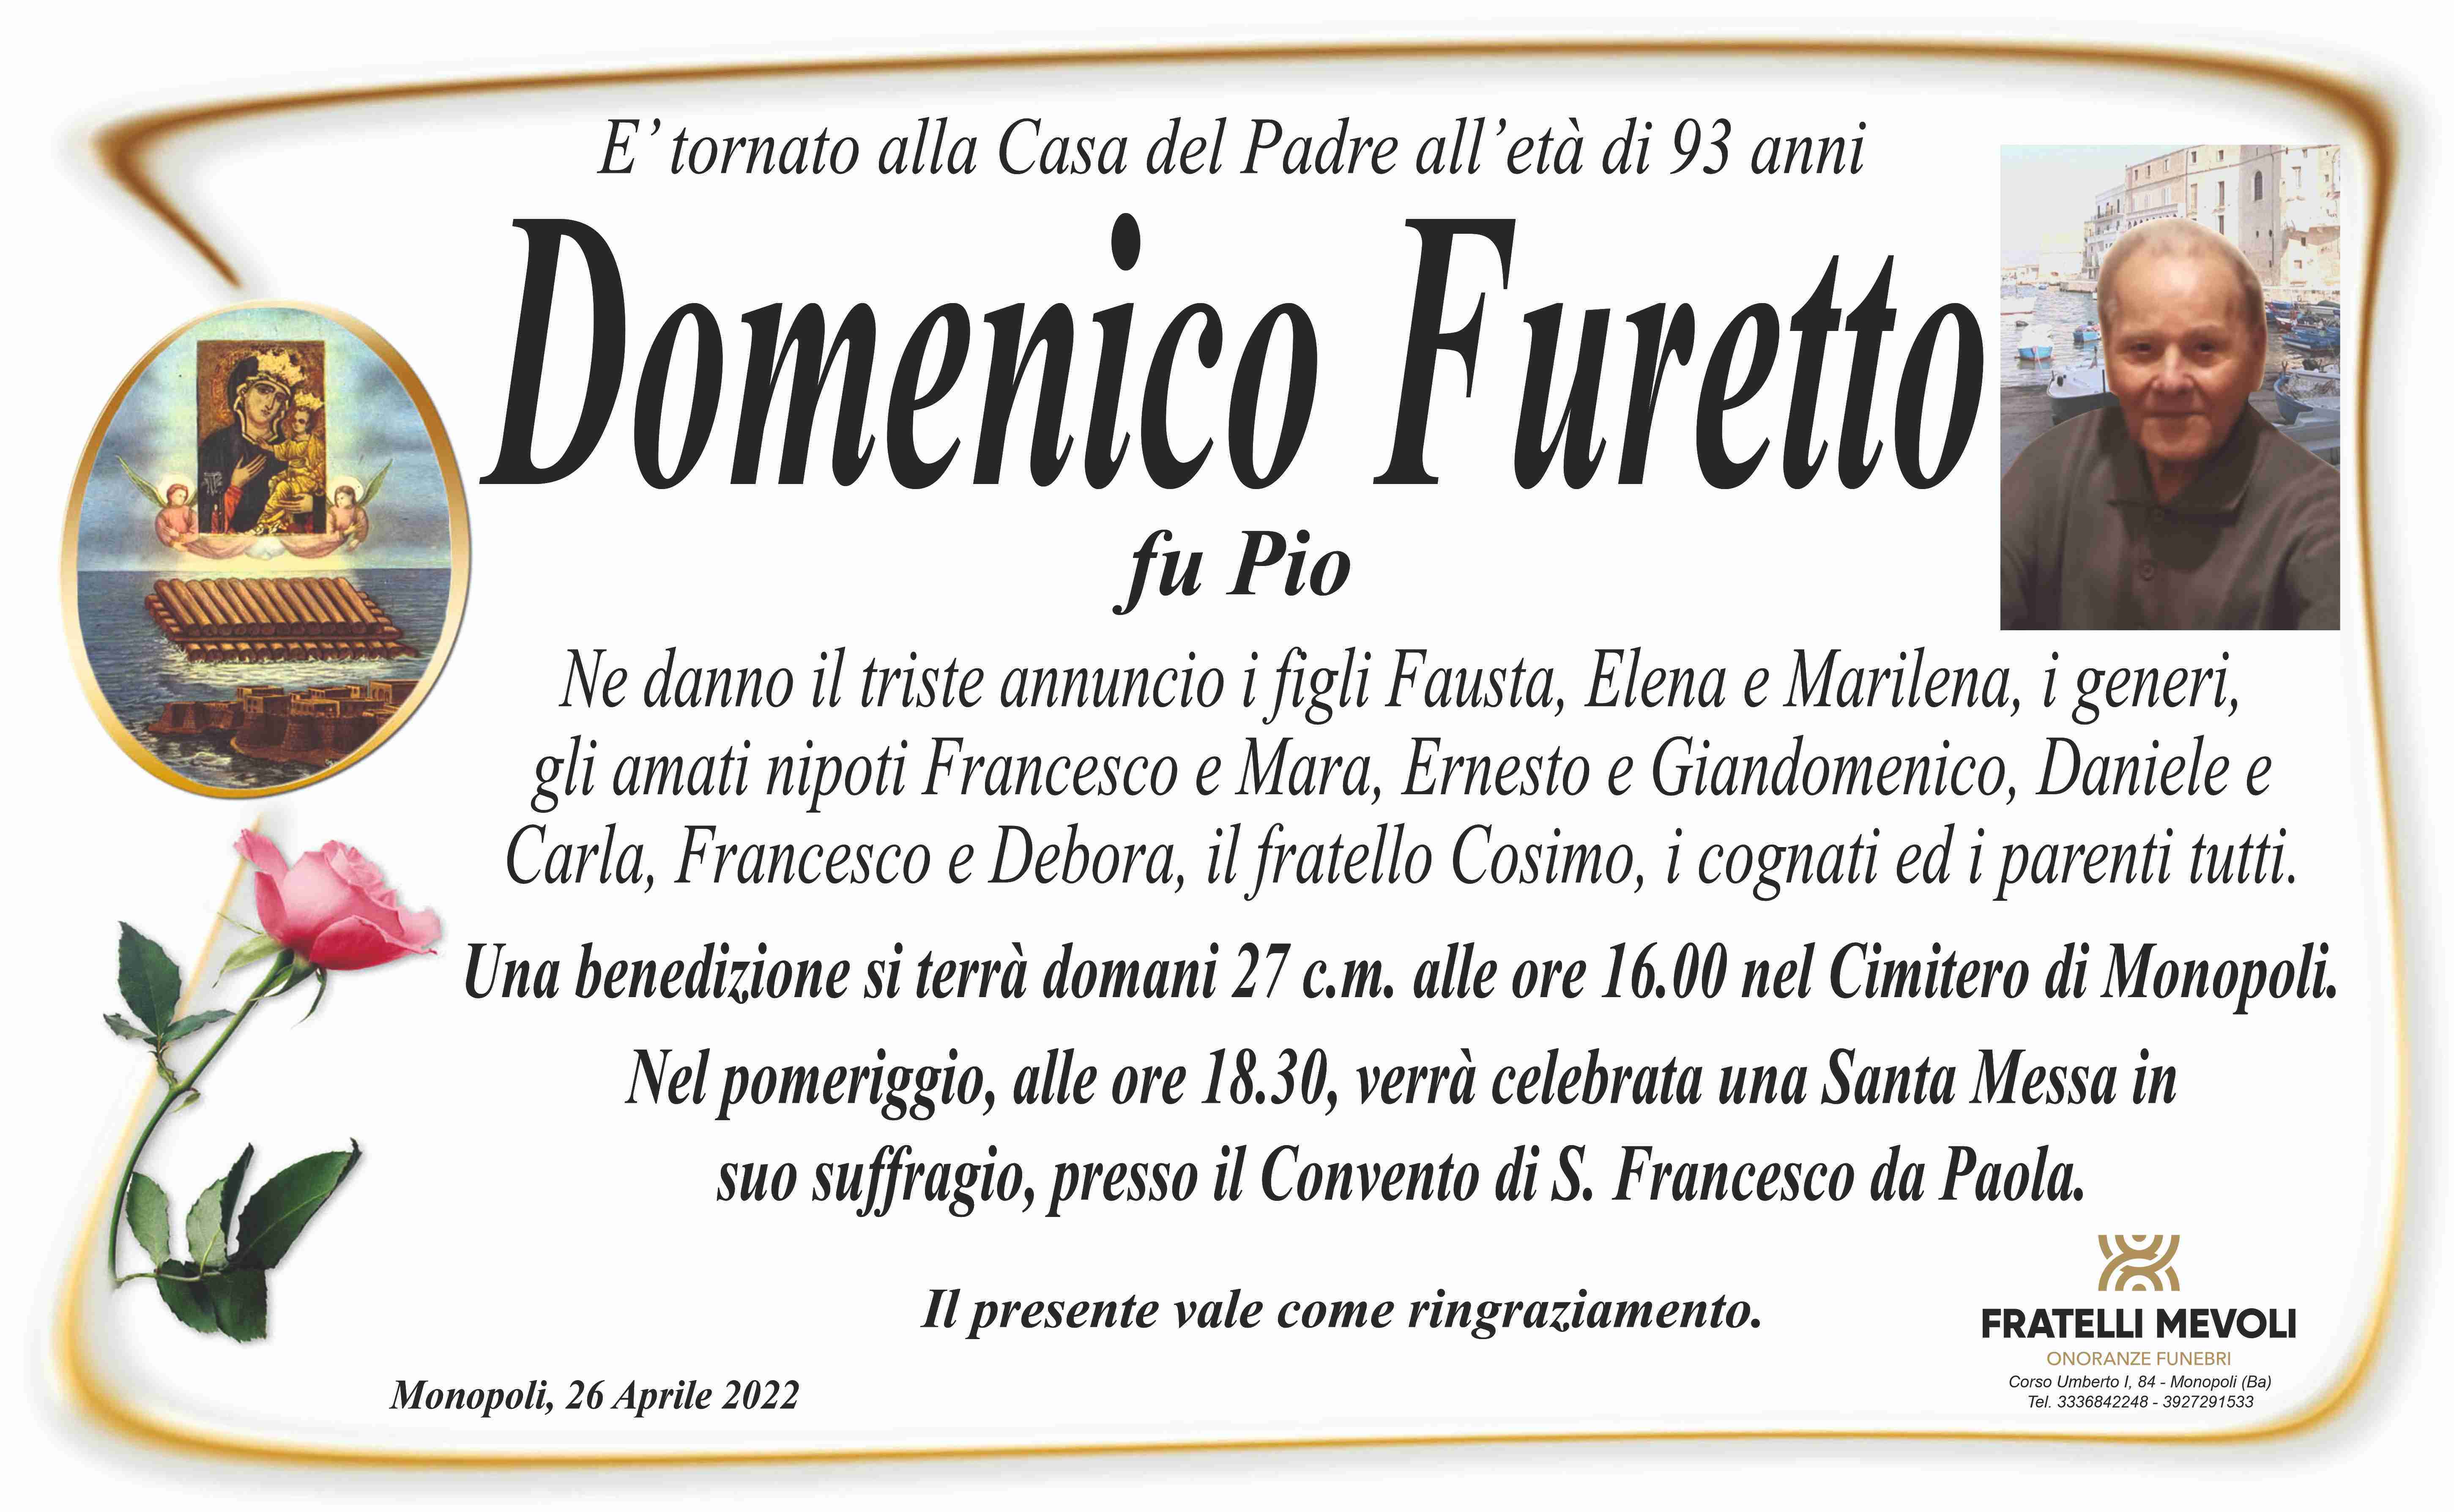 Domenico Furetto